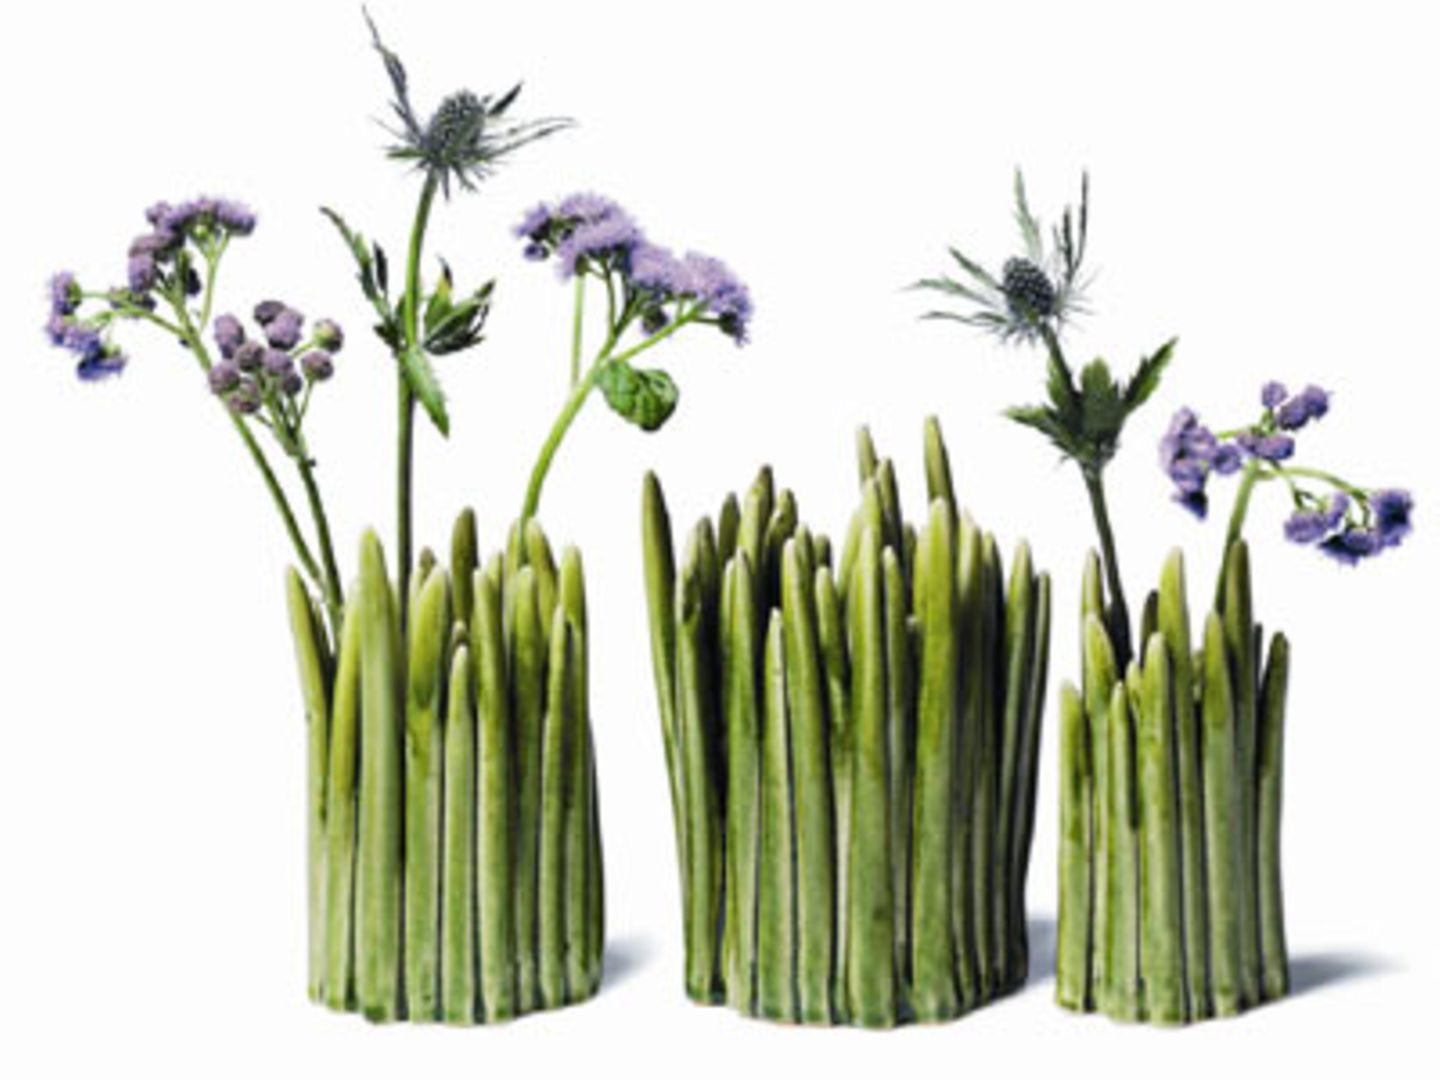 Gras-Vase    Na, wenn das nicht ruckzuck den Frühling in eure Wohnung zaubert, wissen wir auch nicht weiter! Die süßen Vasen mit Gras-Optik sind aus Ton und handgefertigt.     Preis: ab 35 Euro, über  www.normann-copenhagen.com